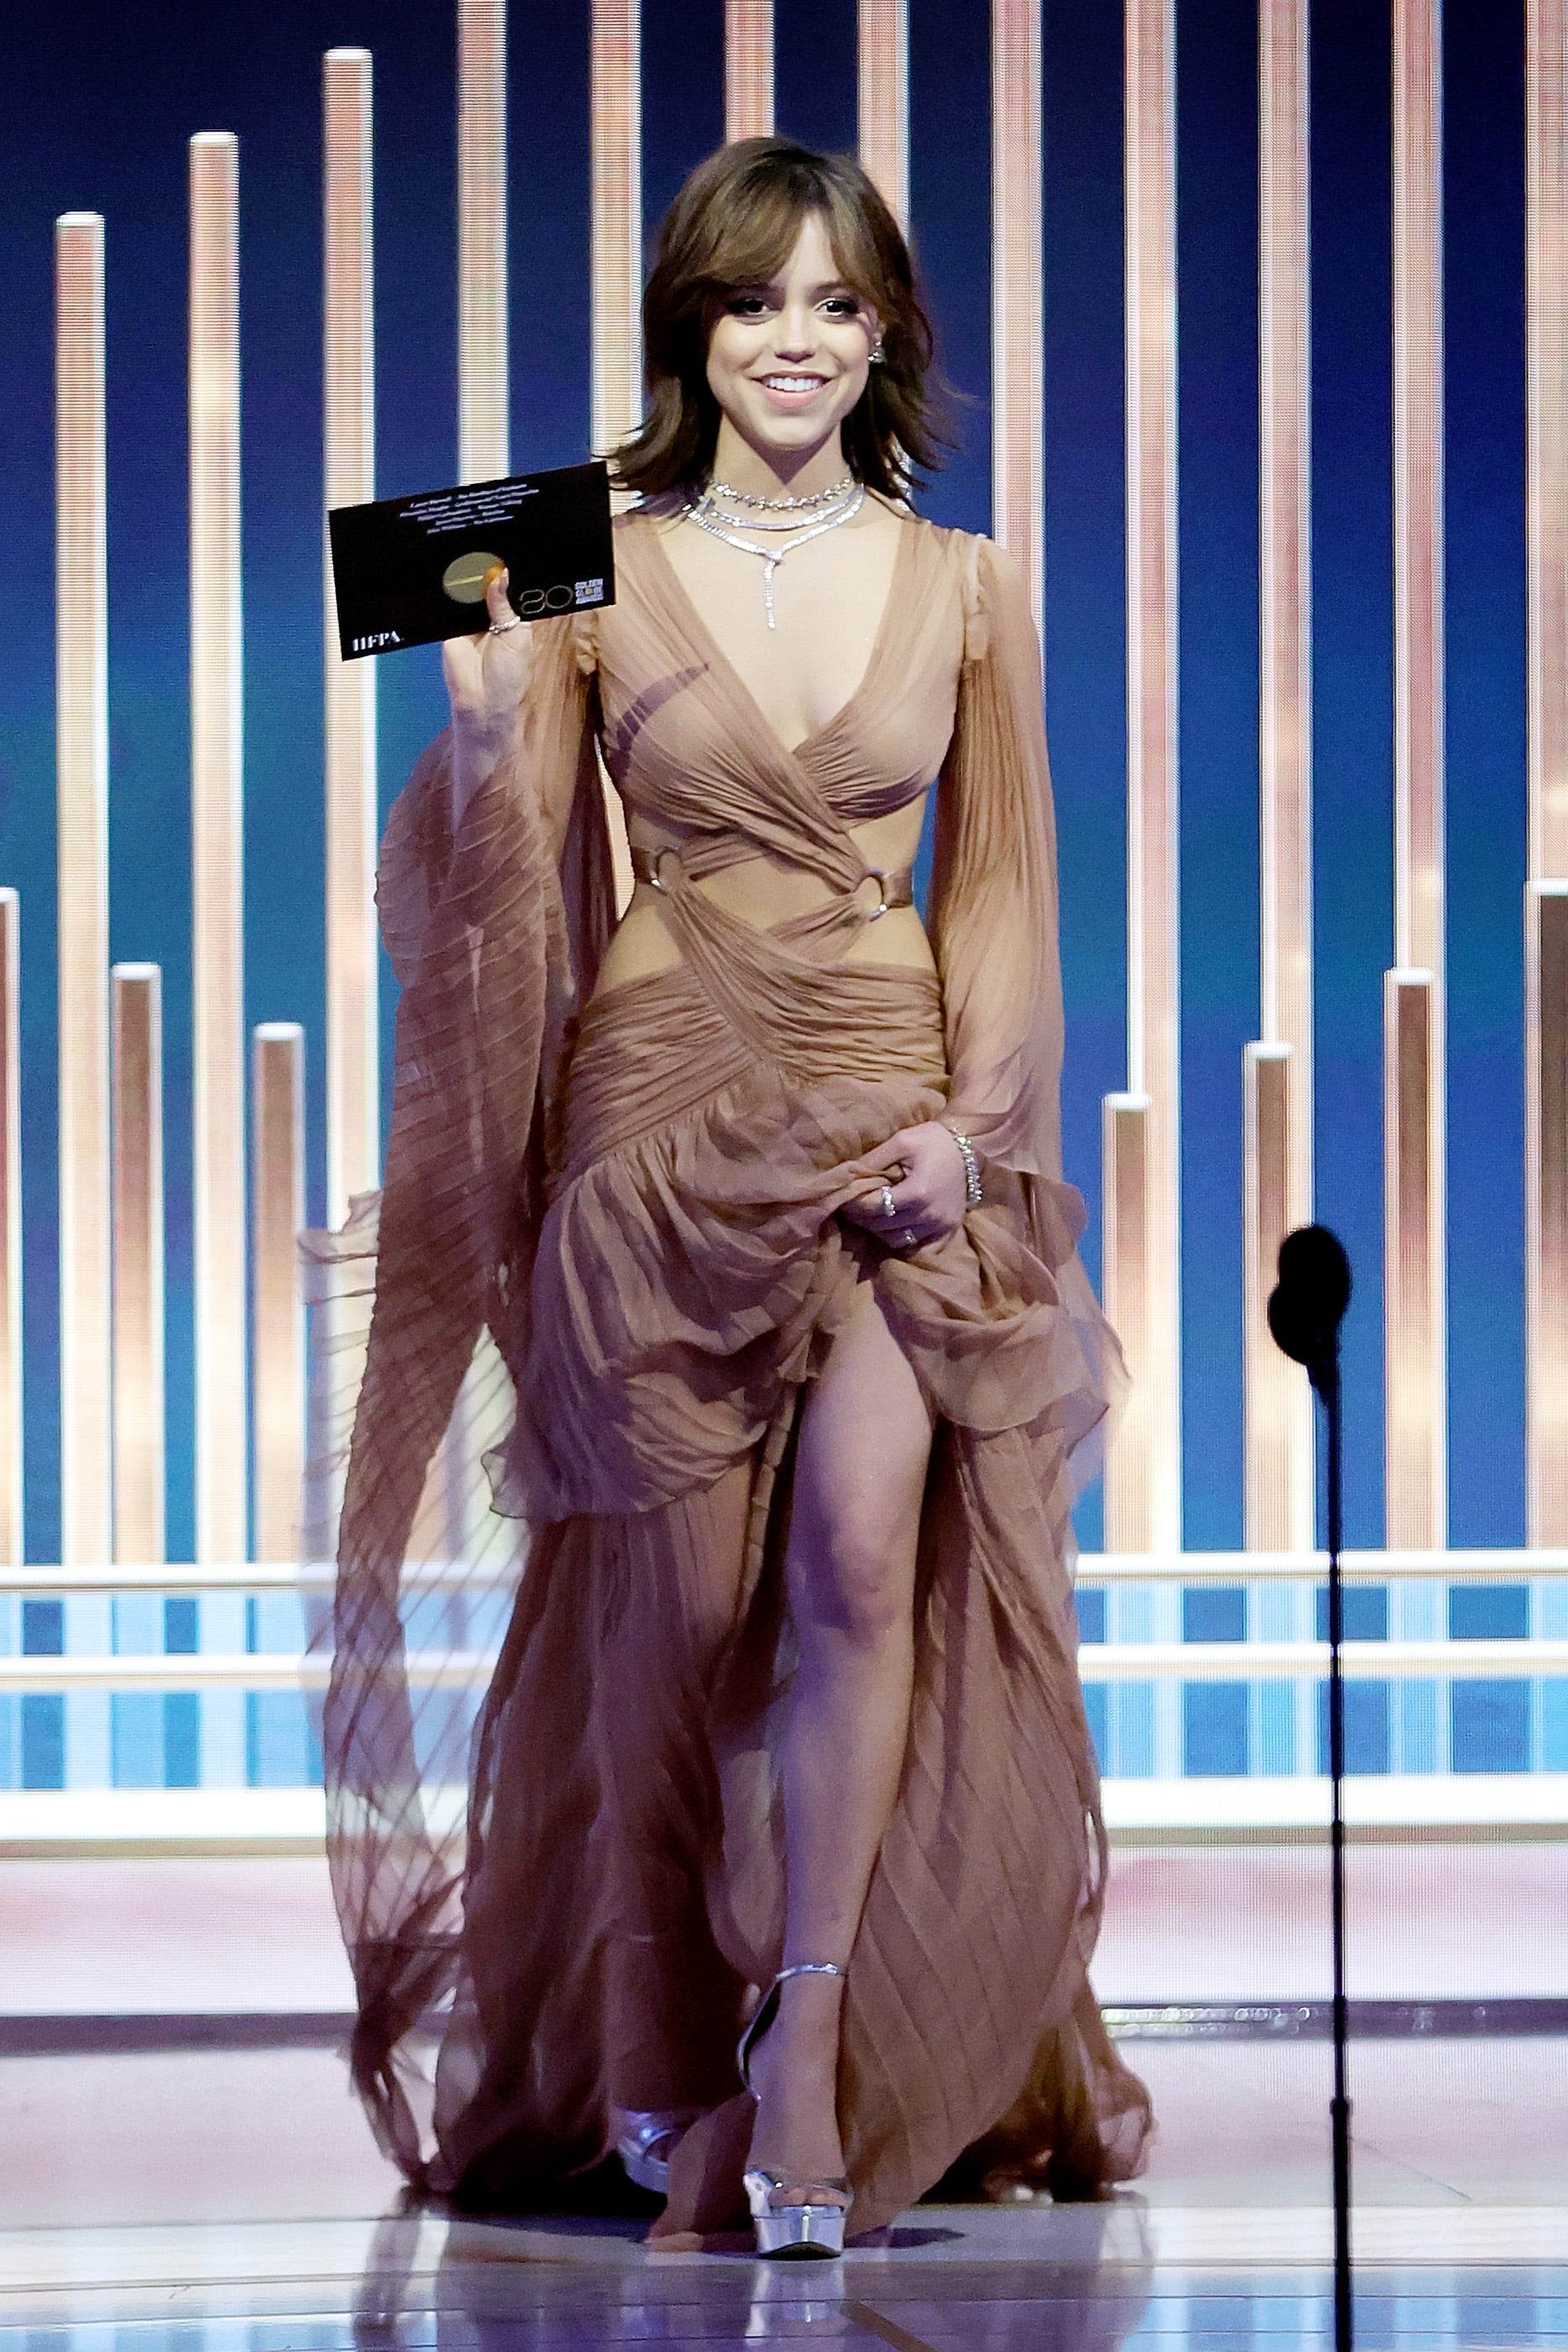 Jenna Ortega Golden Globes Look 2023 Combines Gucci & Gen-Z Trends